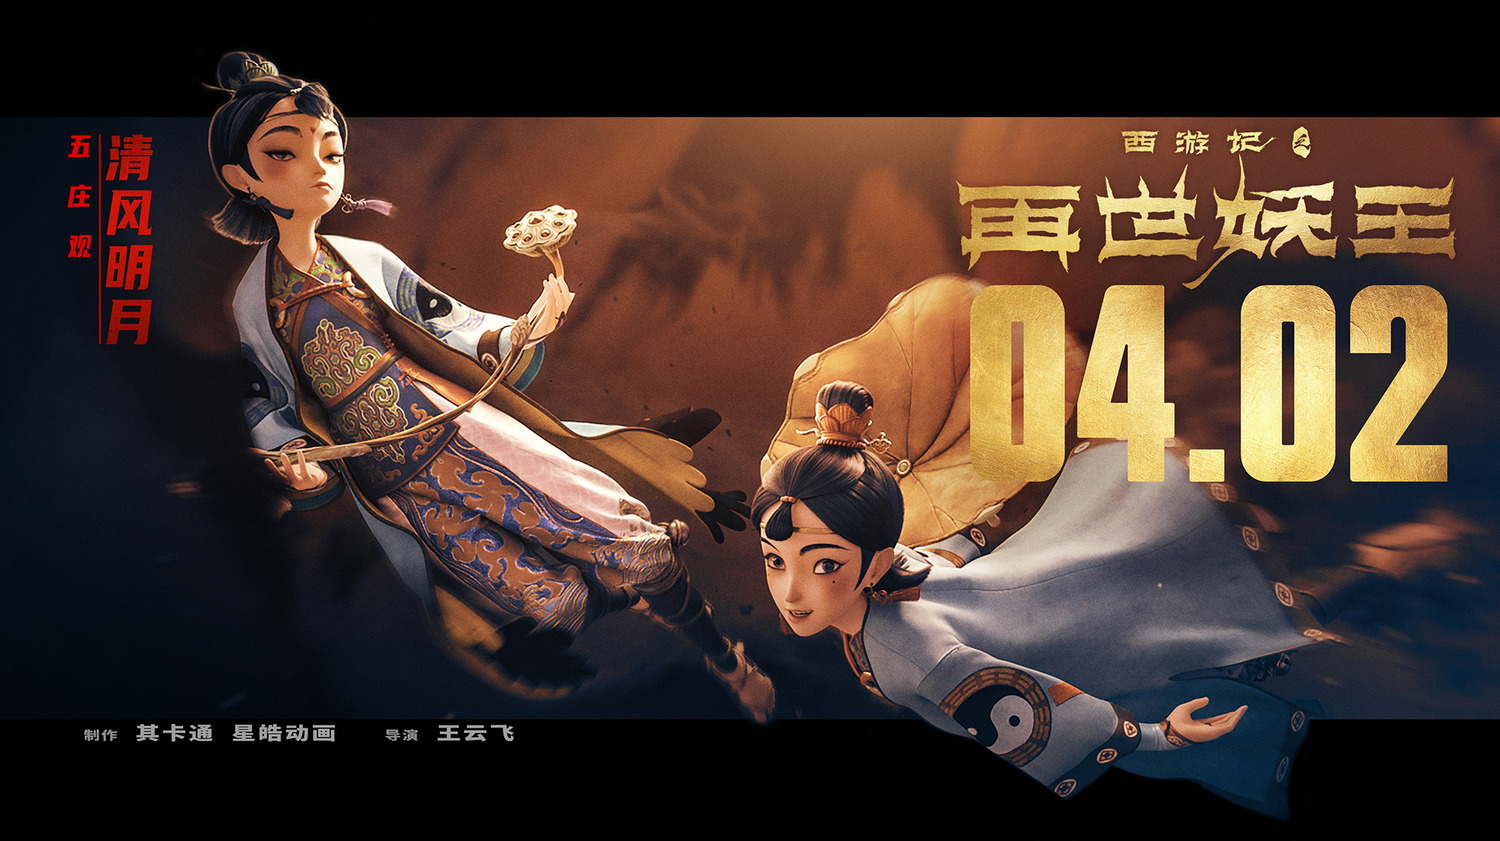 Extra Large Movie Poster Image for Xi You Ji Zhi Zai Shi Yao Wang (#10 of 21)